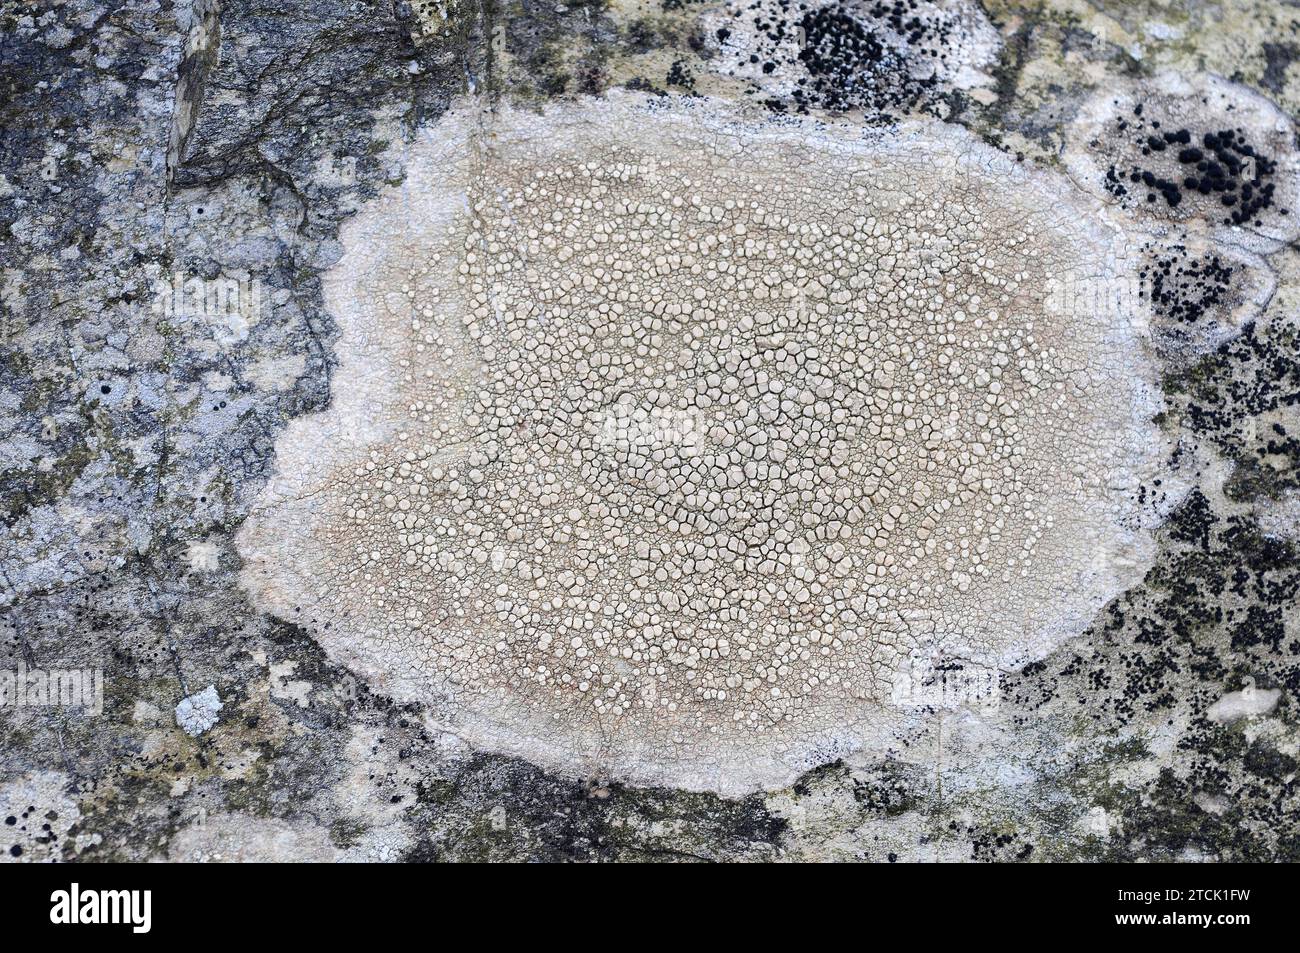 Ochrolechia parella is a crustose lichen. Stock Photo